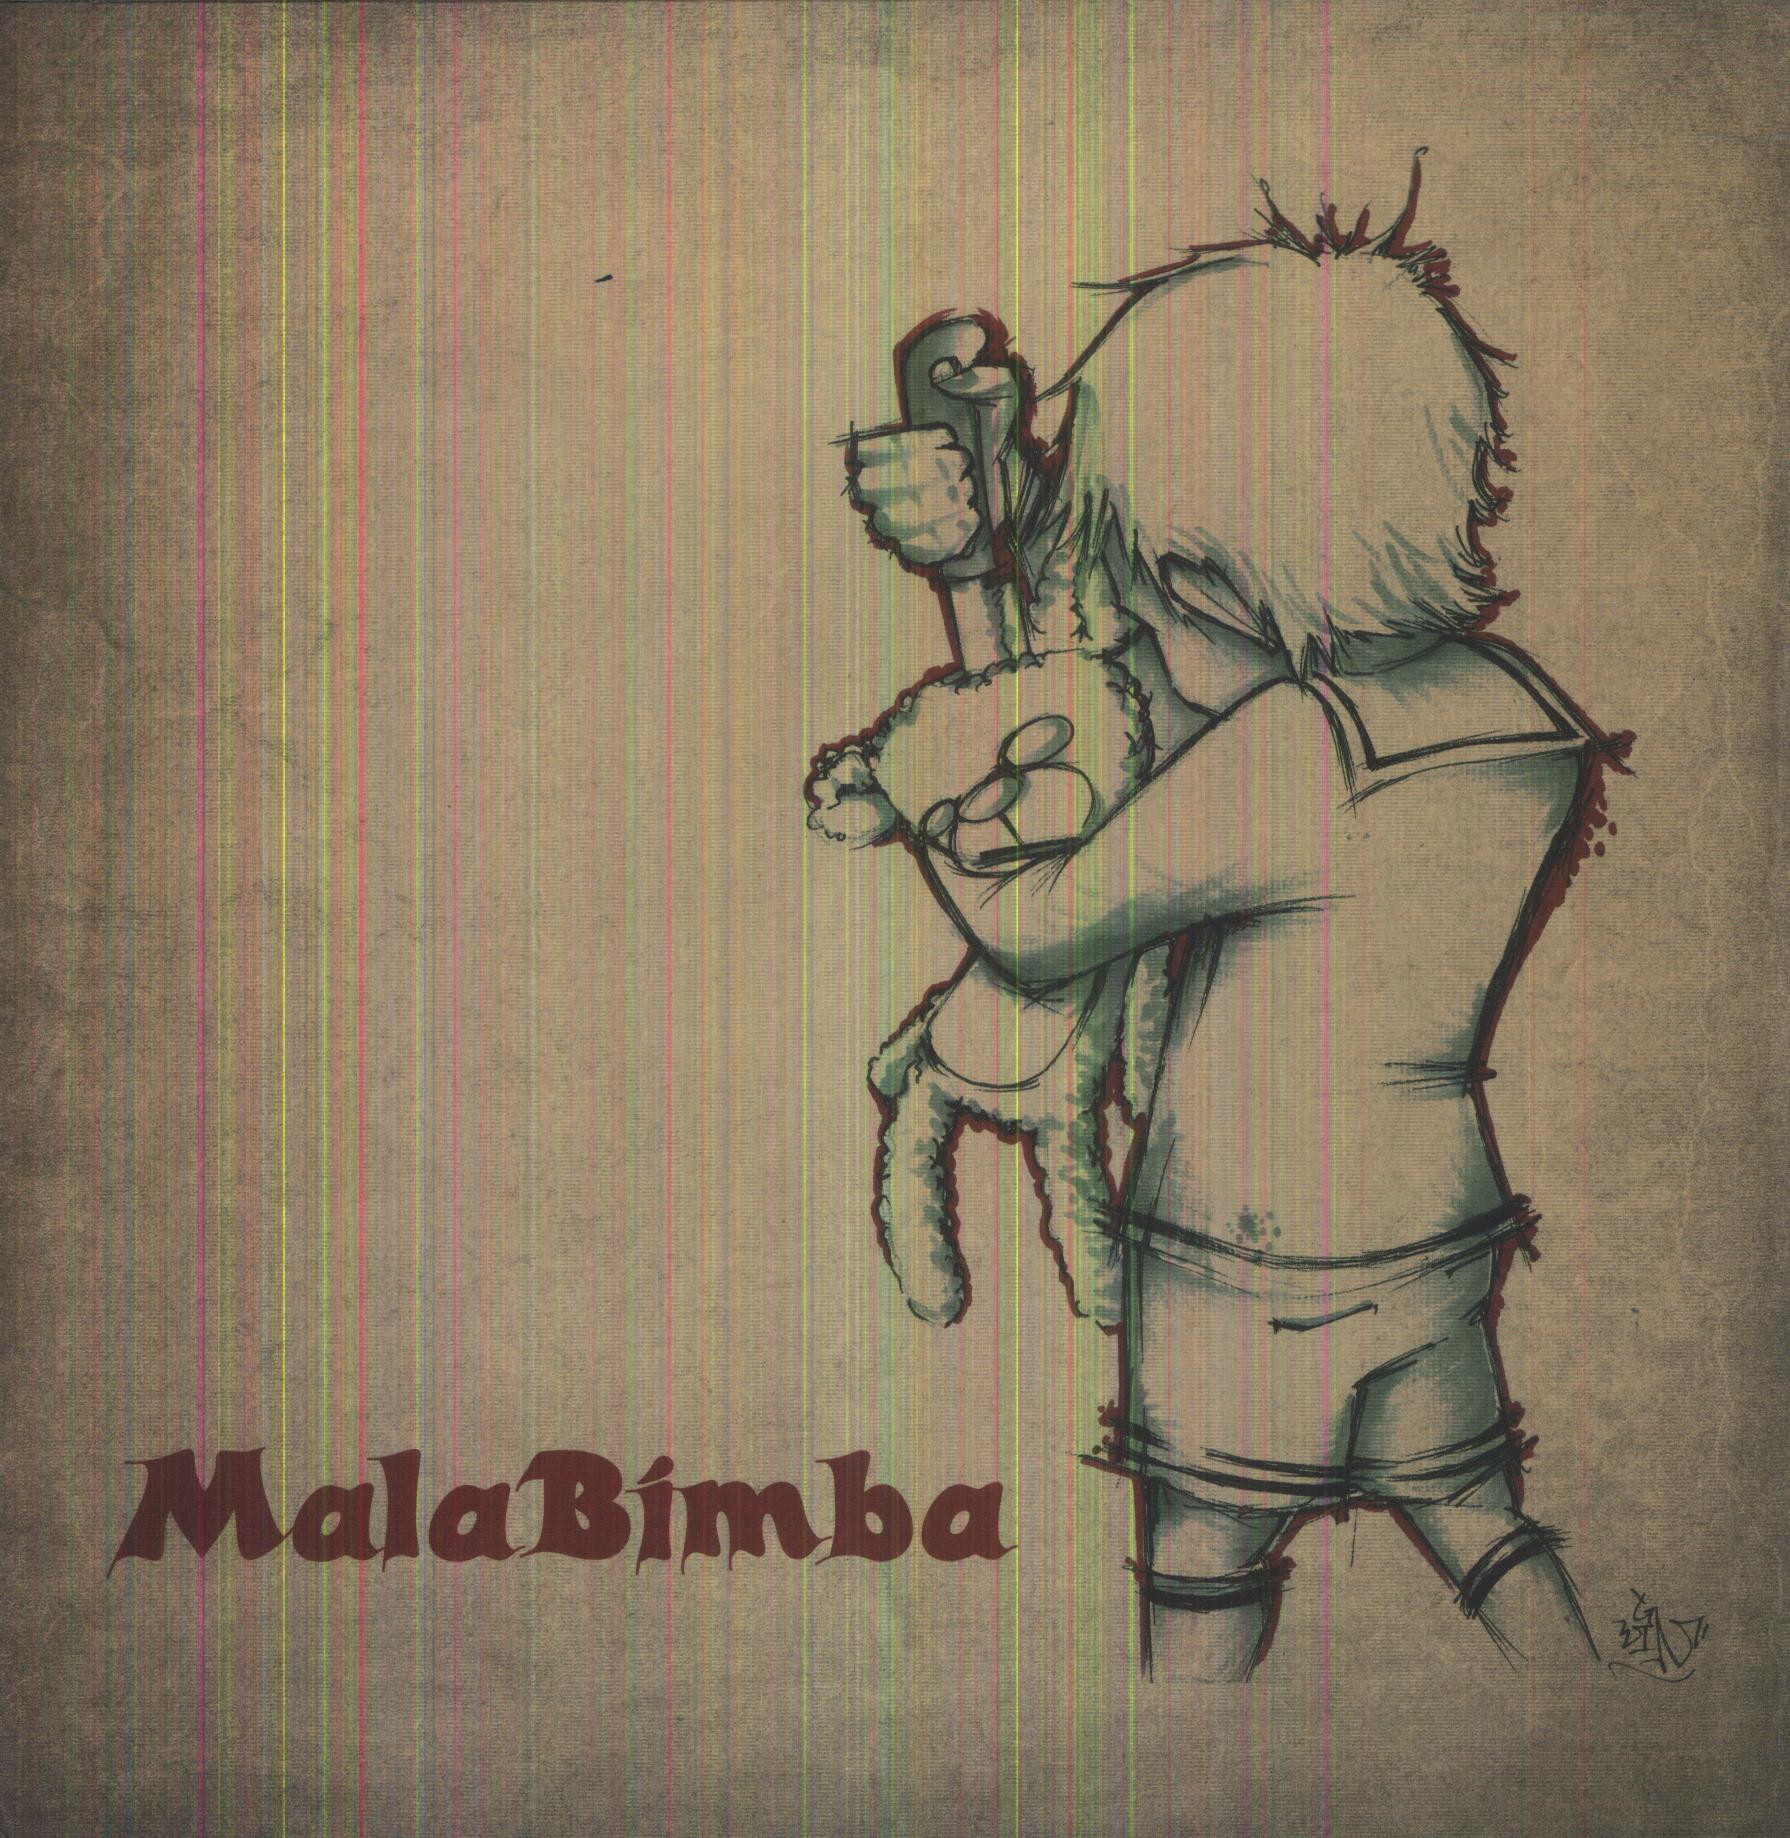 MALABIMBA (HOL)